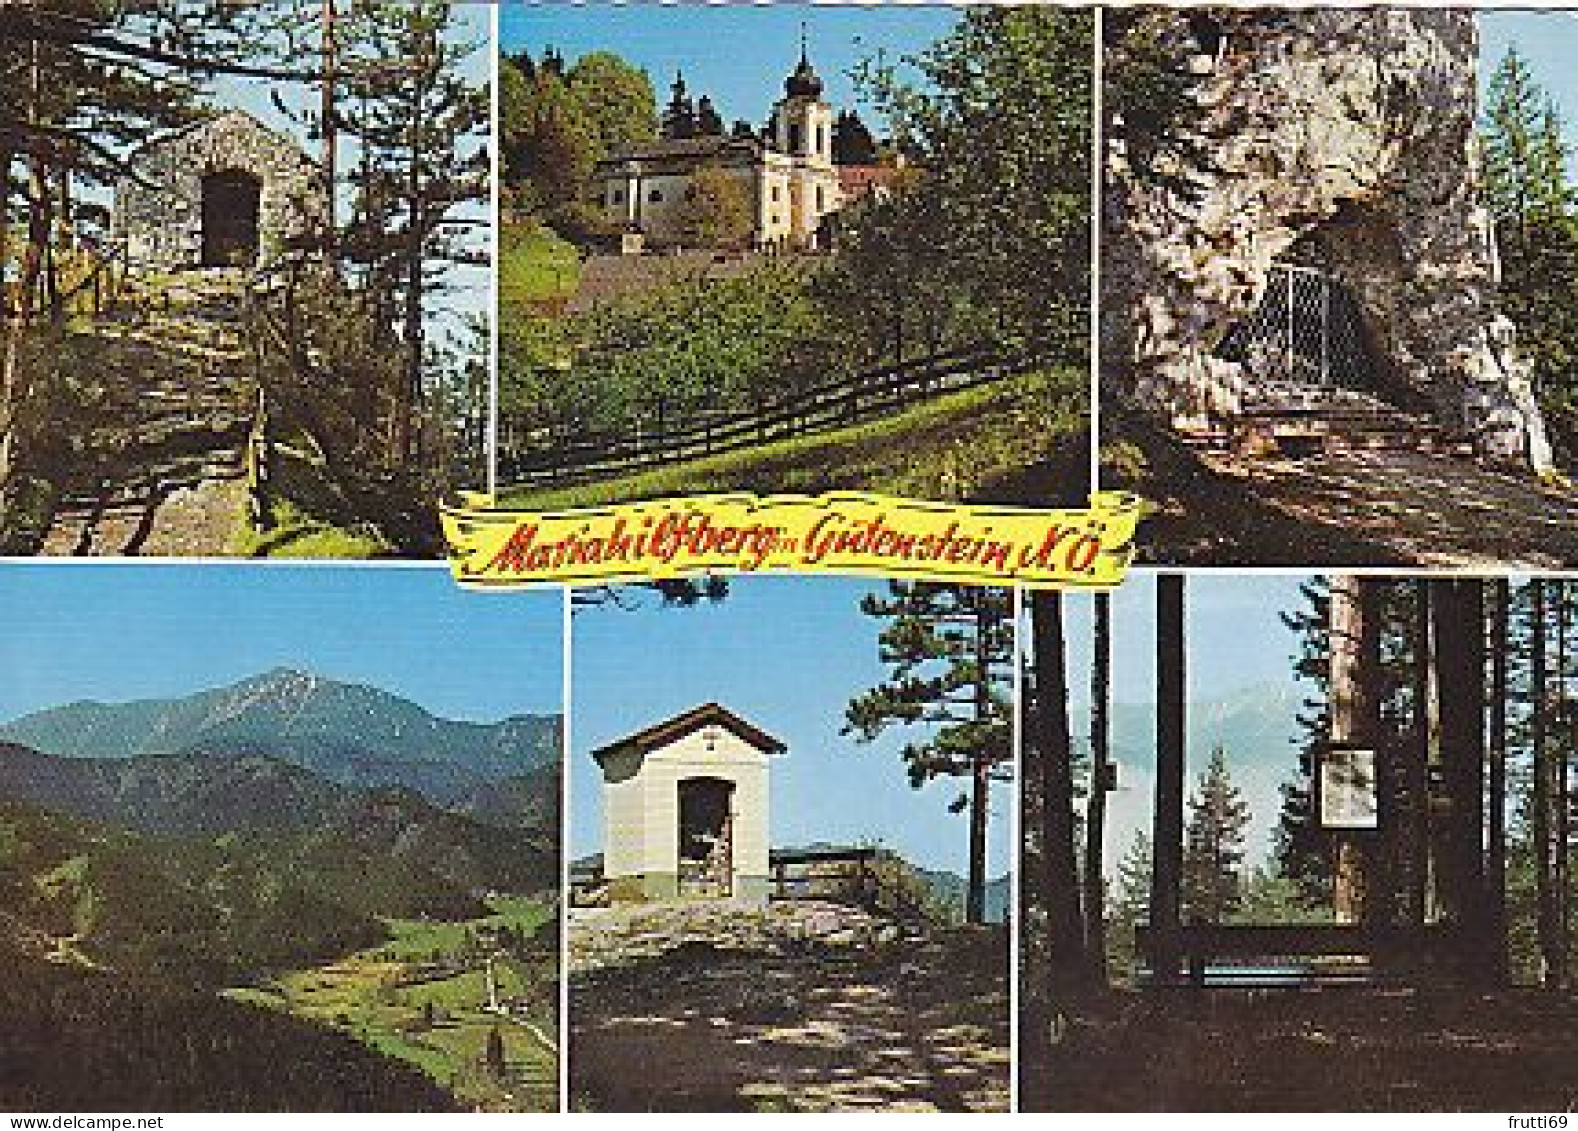 AK 191323 AUSTRIA - Mariahilfberg In Gutenstein - Gutenstein